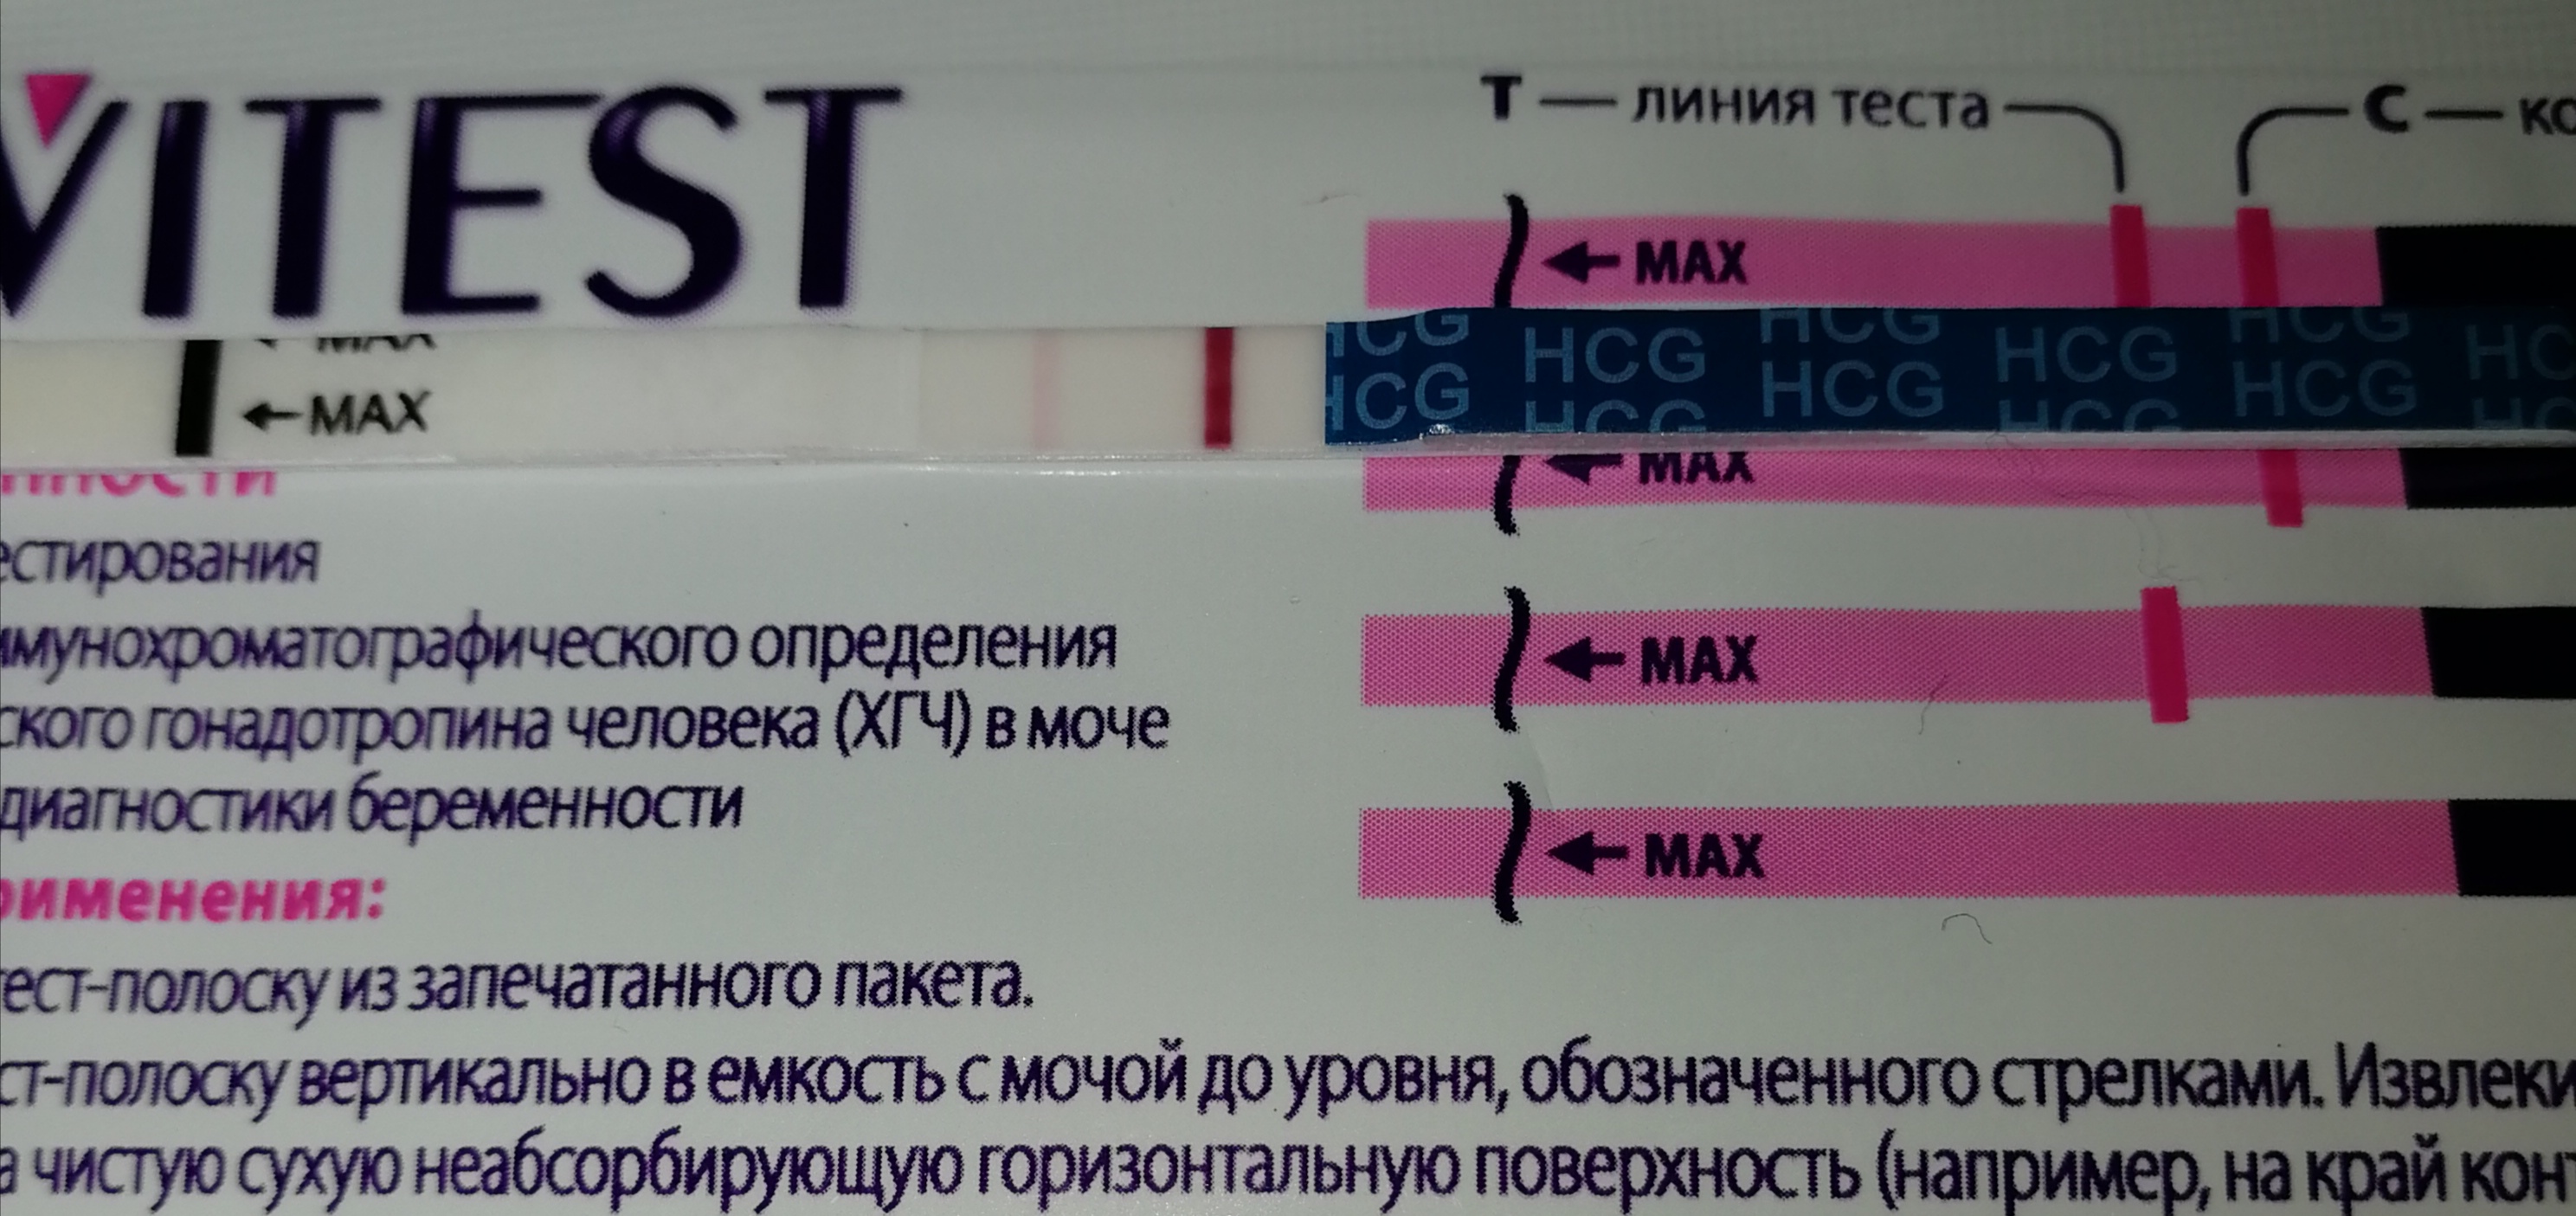 Когда сдавать тест на беременность. Тесты при ХГЧ. Результаты теста ХГЧ. Тест на беременность и ХГЧ В крови. ХГЧ тест на беременность.